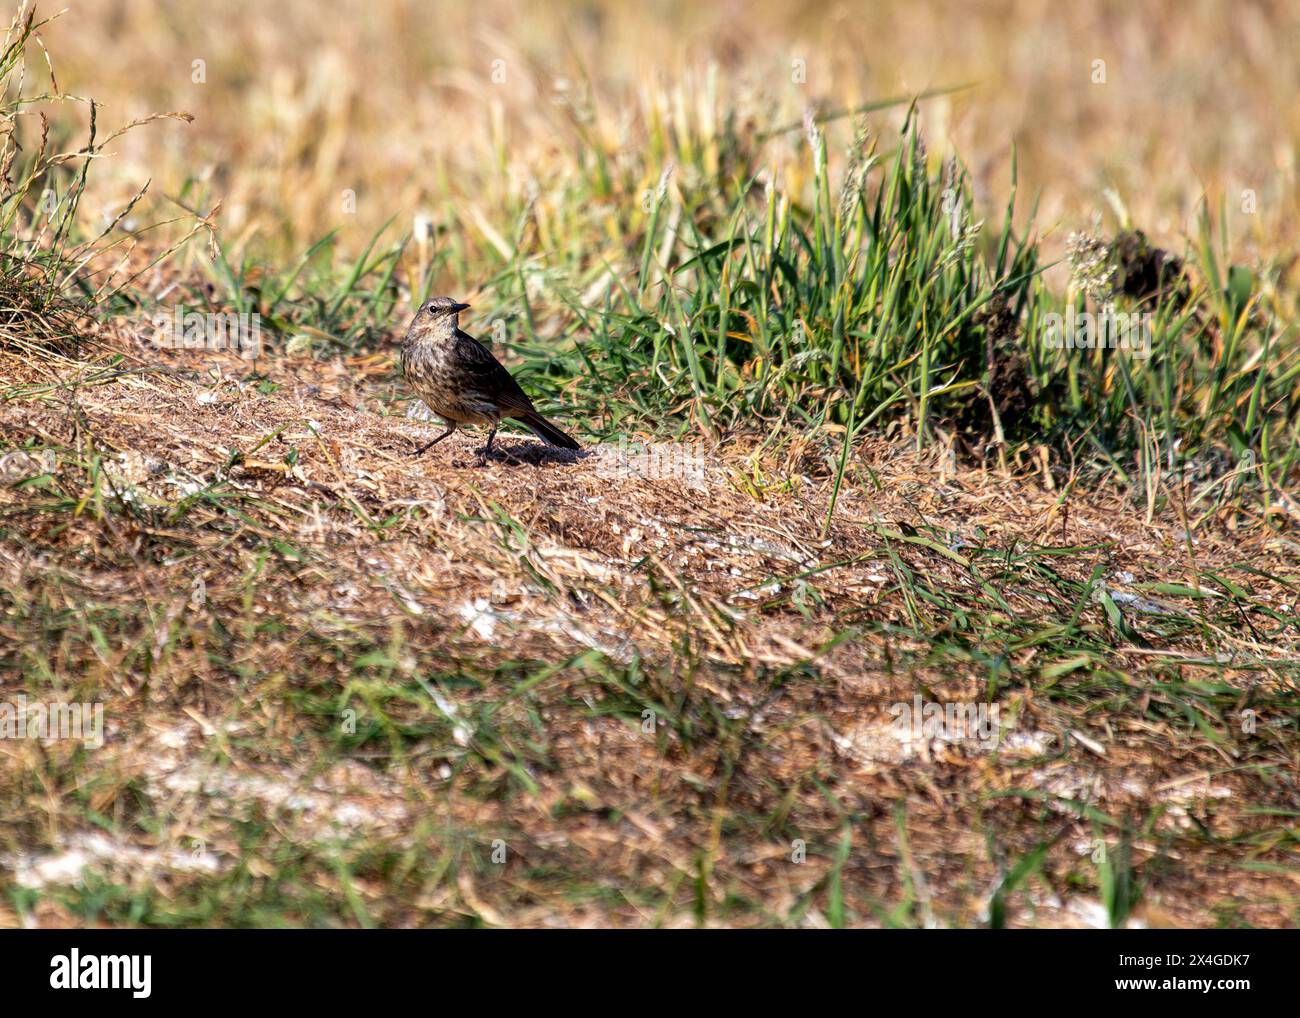 Délicat oiseau brun avec de longues pattes, fréquente les rivages rocheux de l'Ireland's Eye, chassant les insectes. Banque D'Images